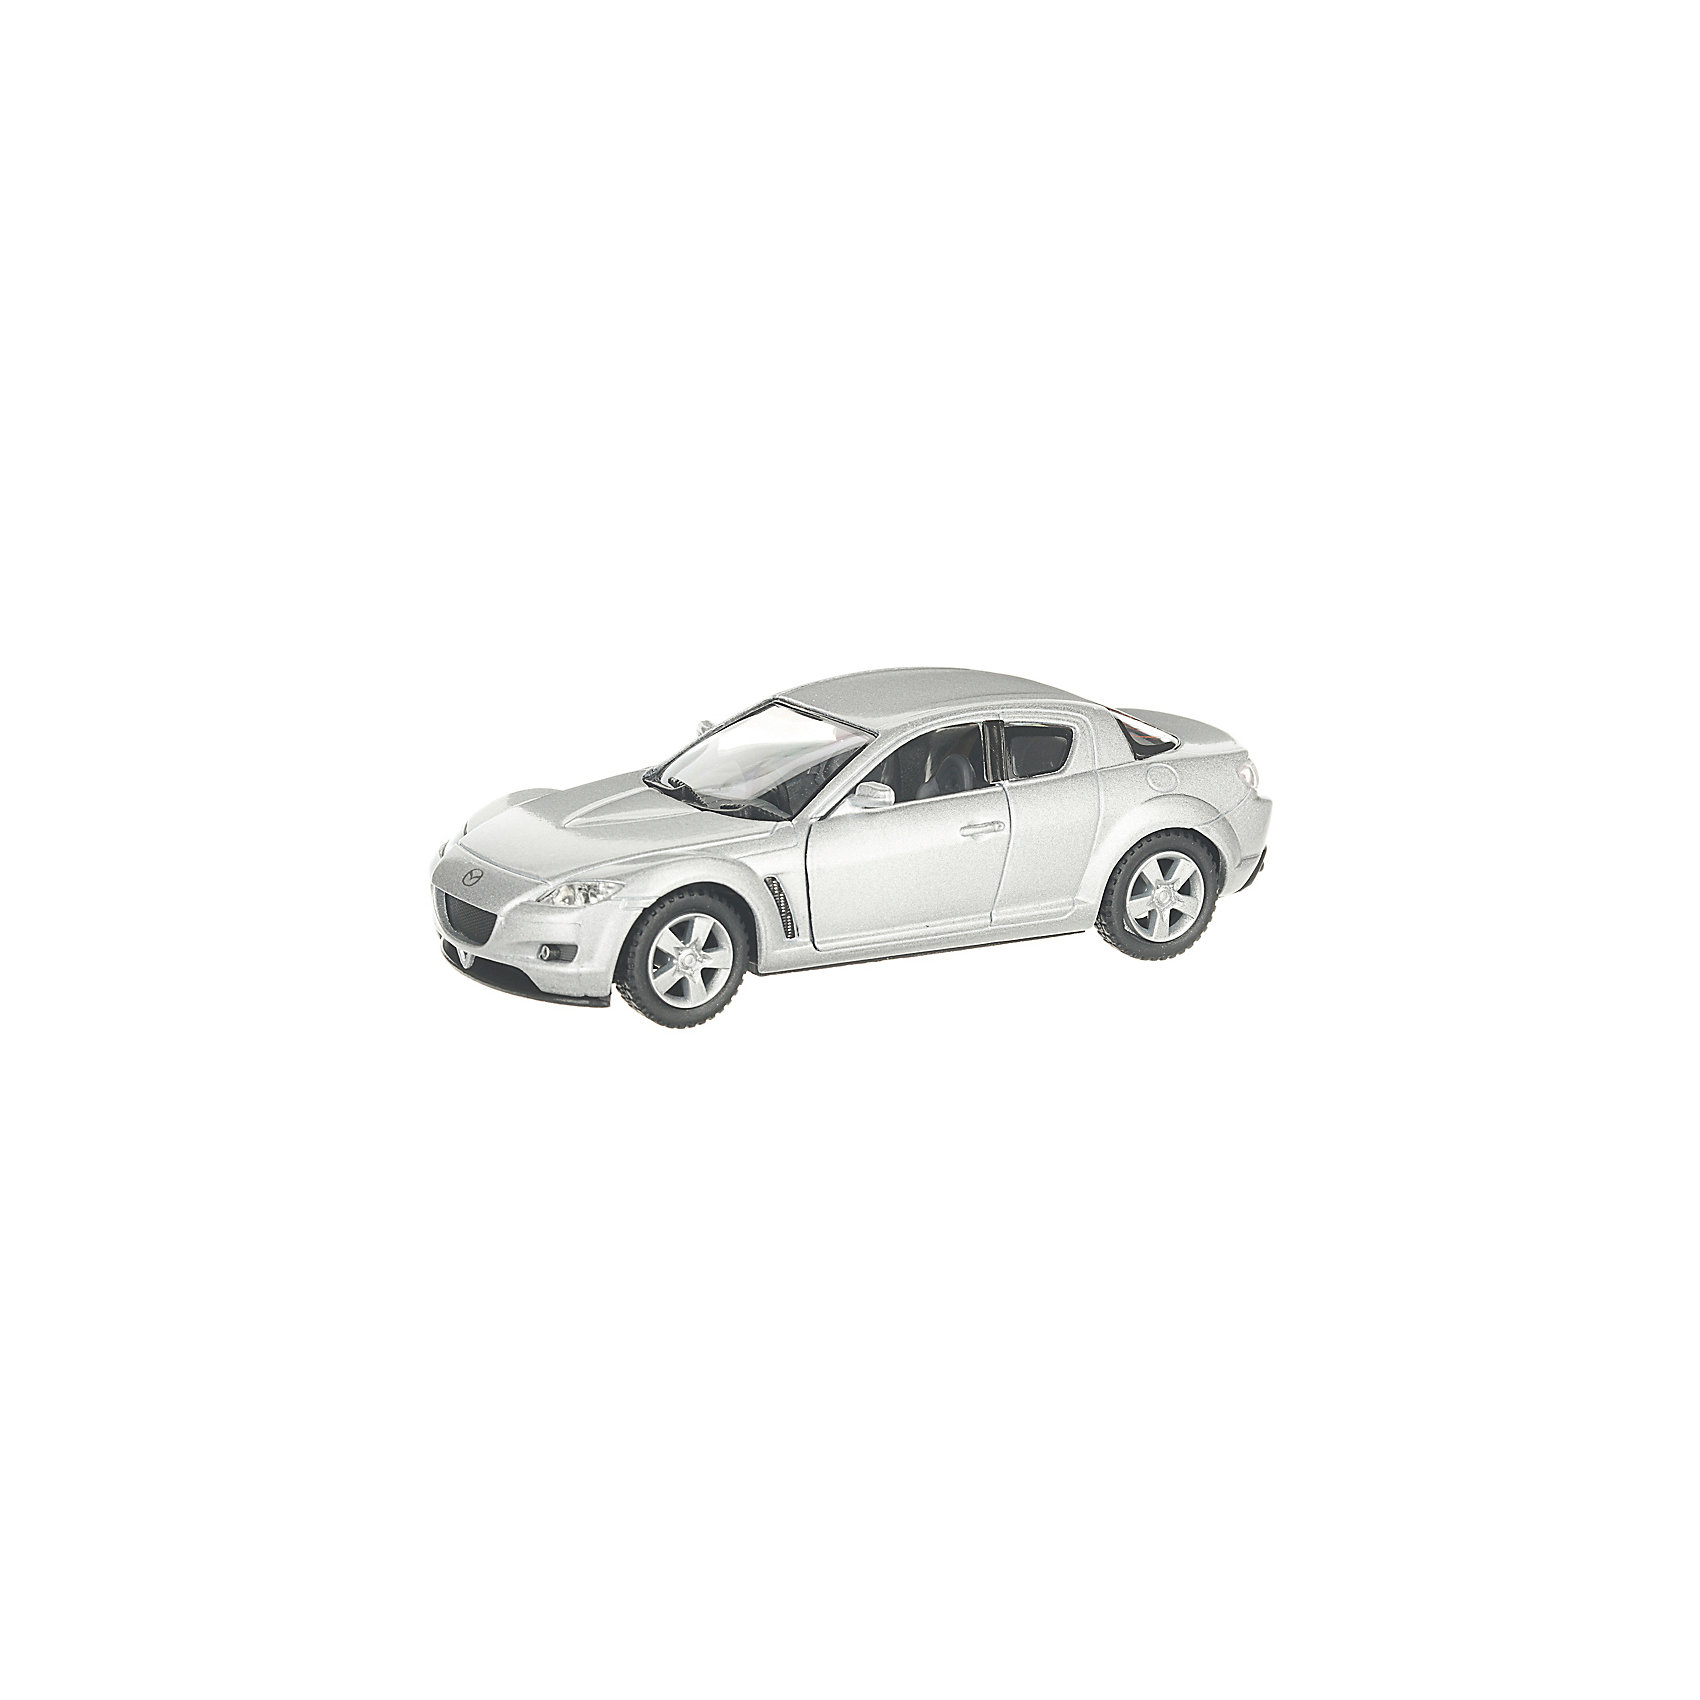 Коллекционная машинка Mazda RX8, серая Serinity Toys 13233559